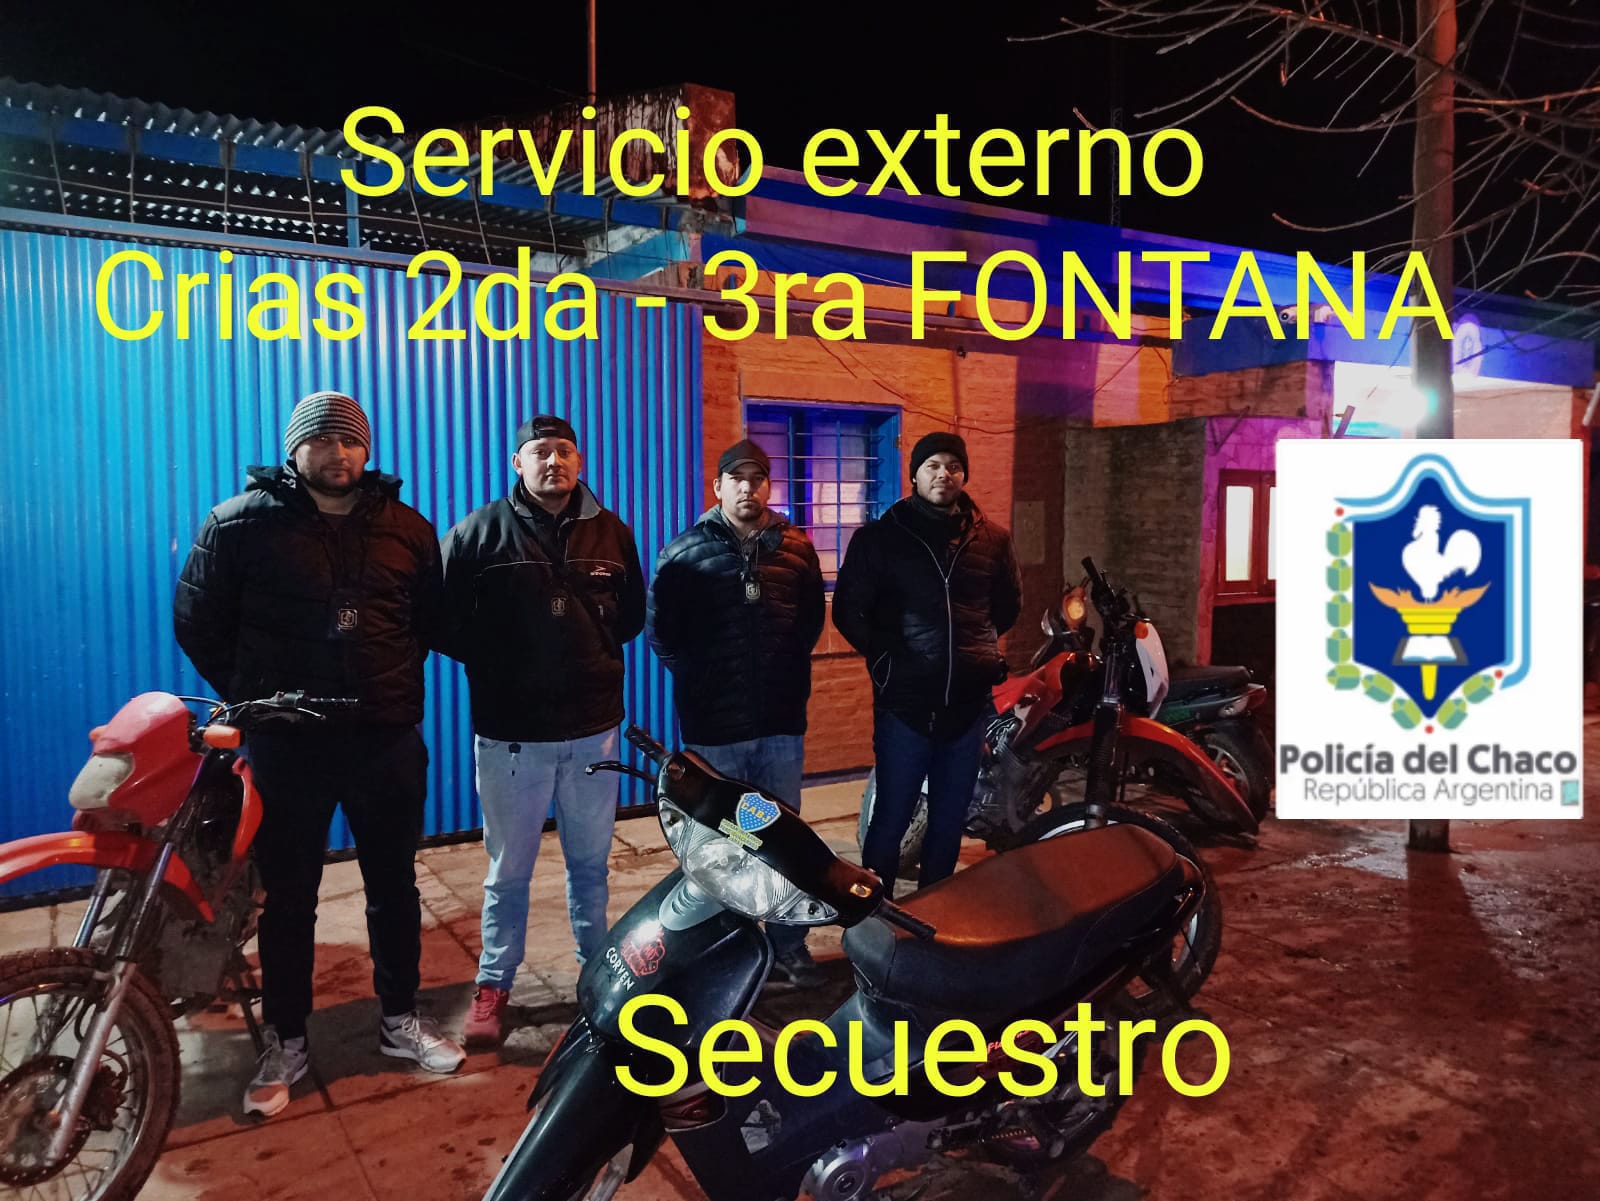 Fontana: abandonaron una moto al ver a los policías. Tenía pedido de secuestro 